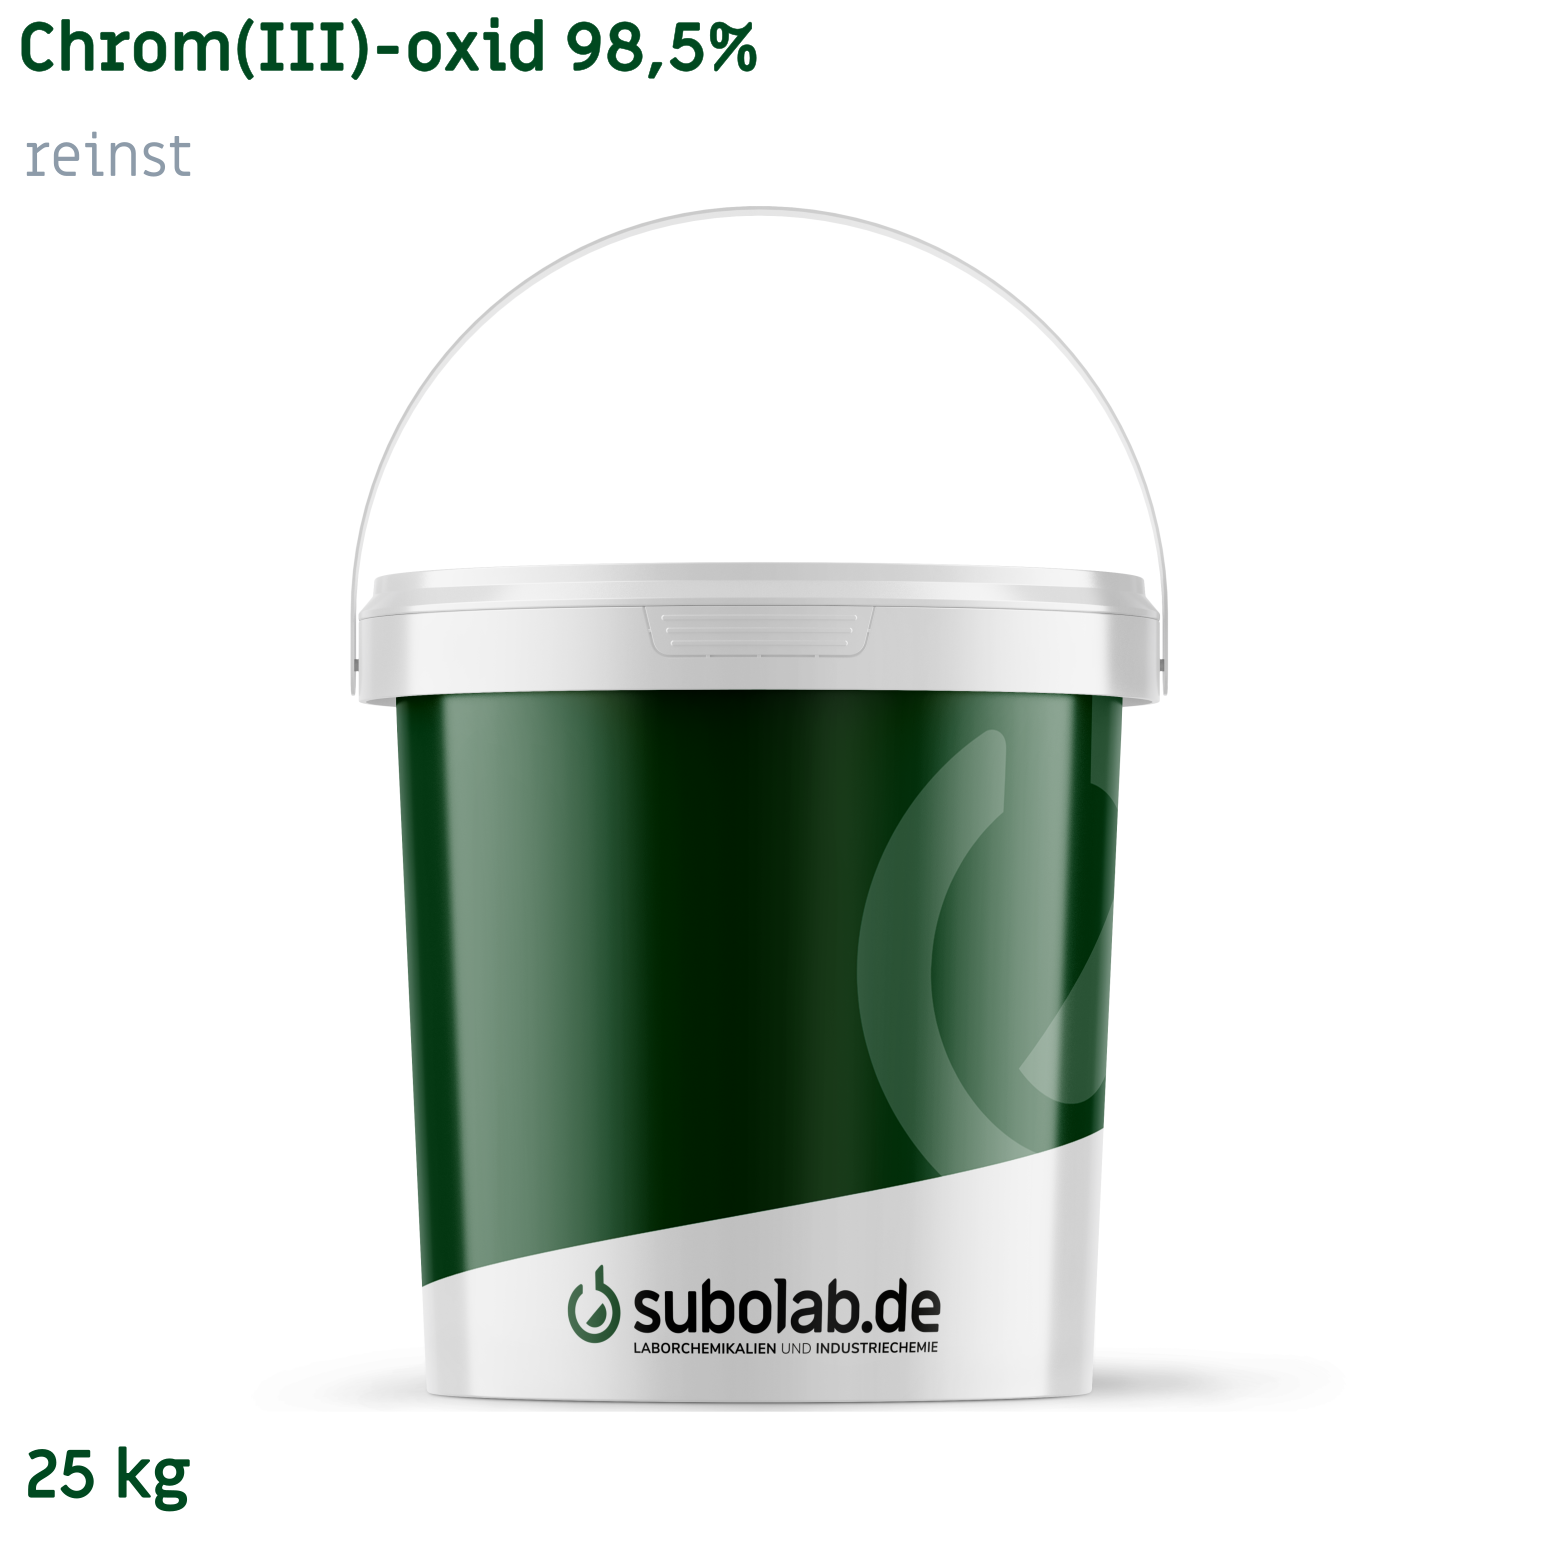 Bild von Chrom(III)-oxid 98,5% reinst (25 kg)